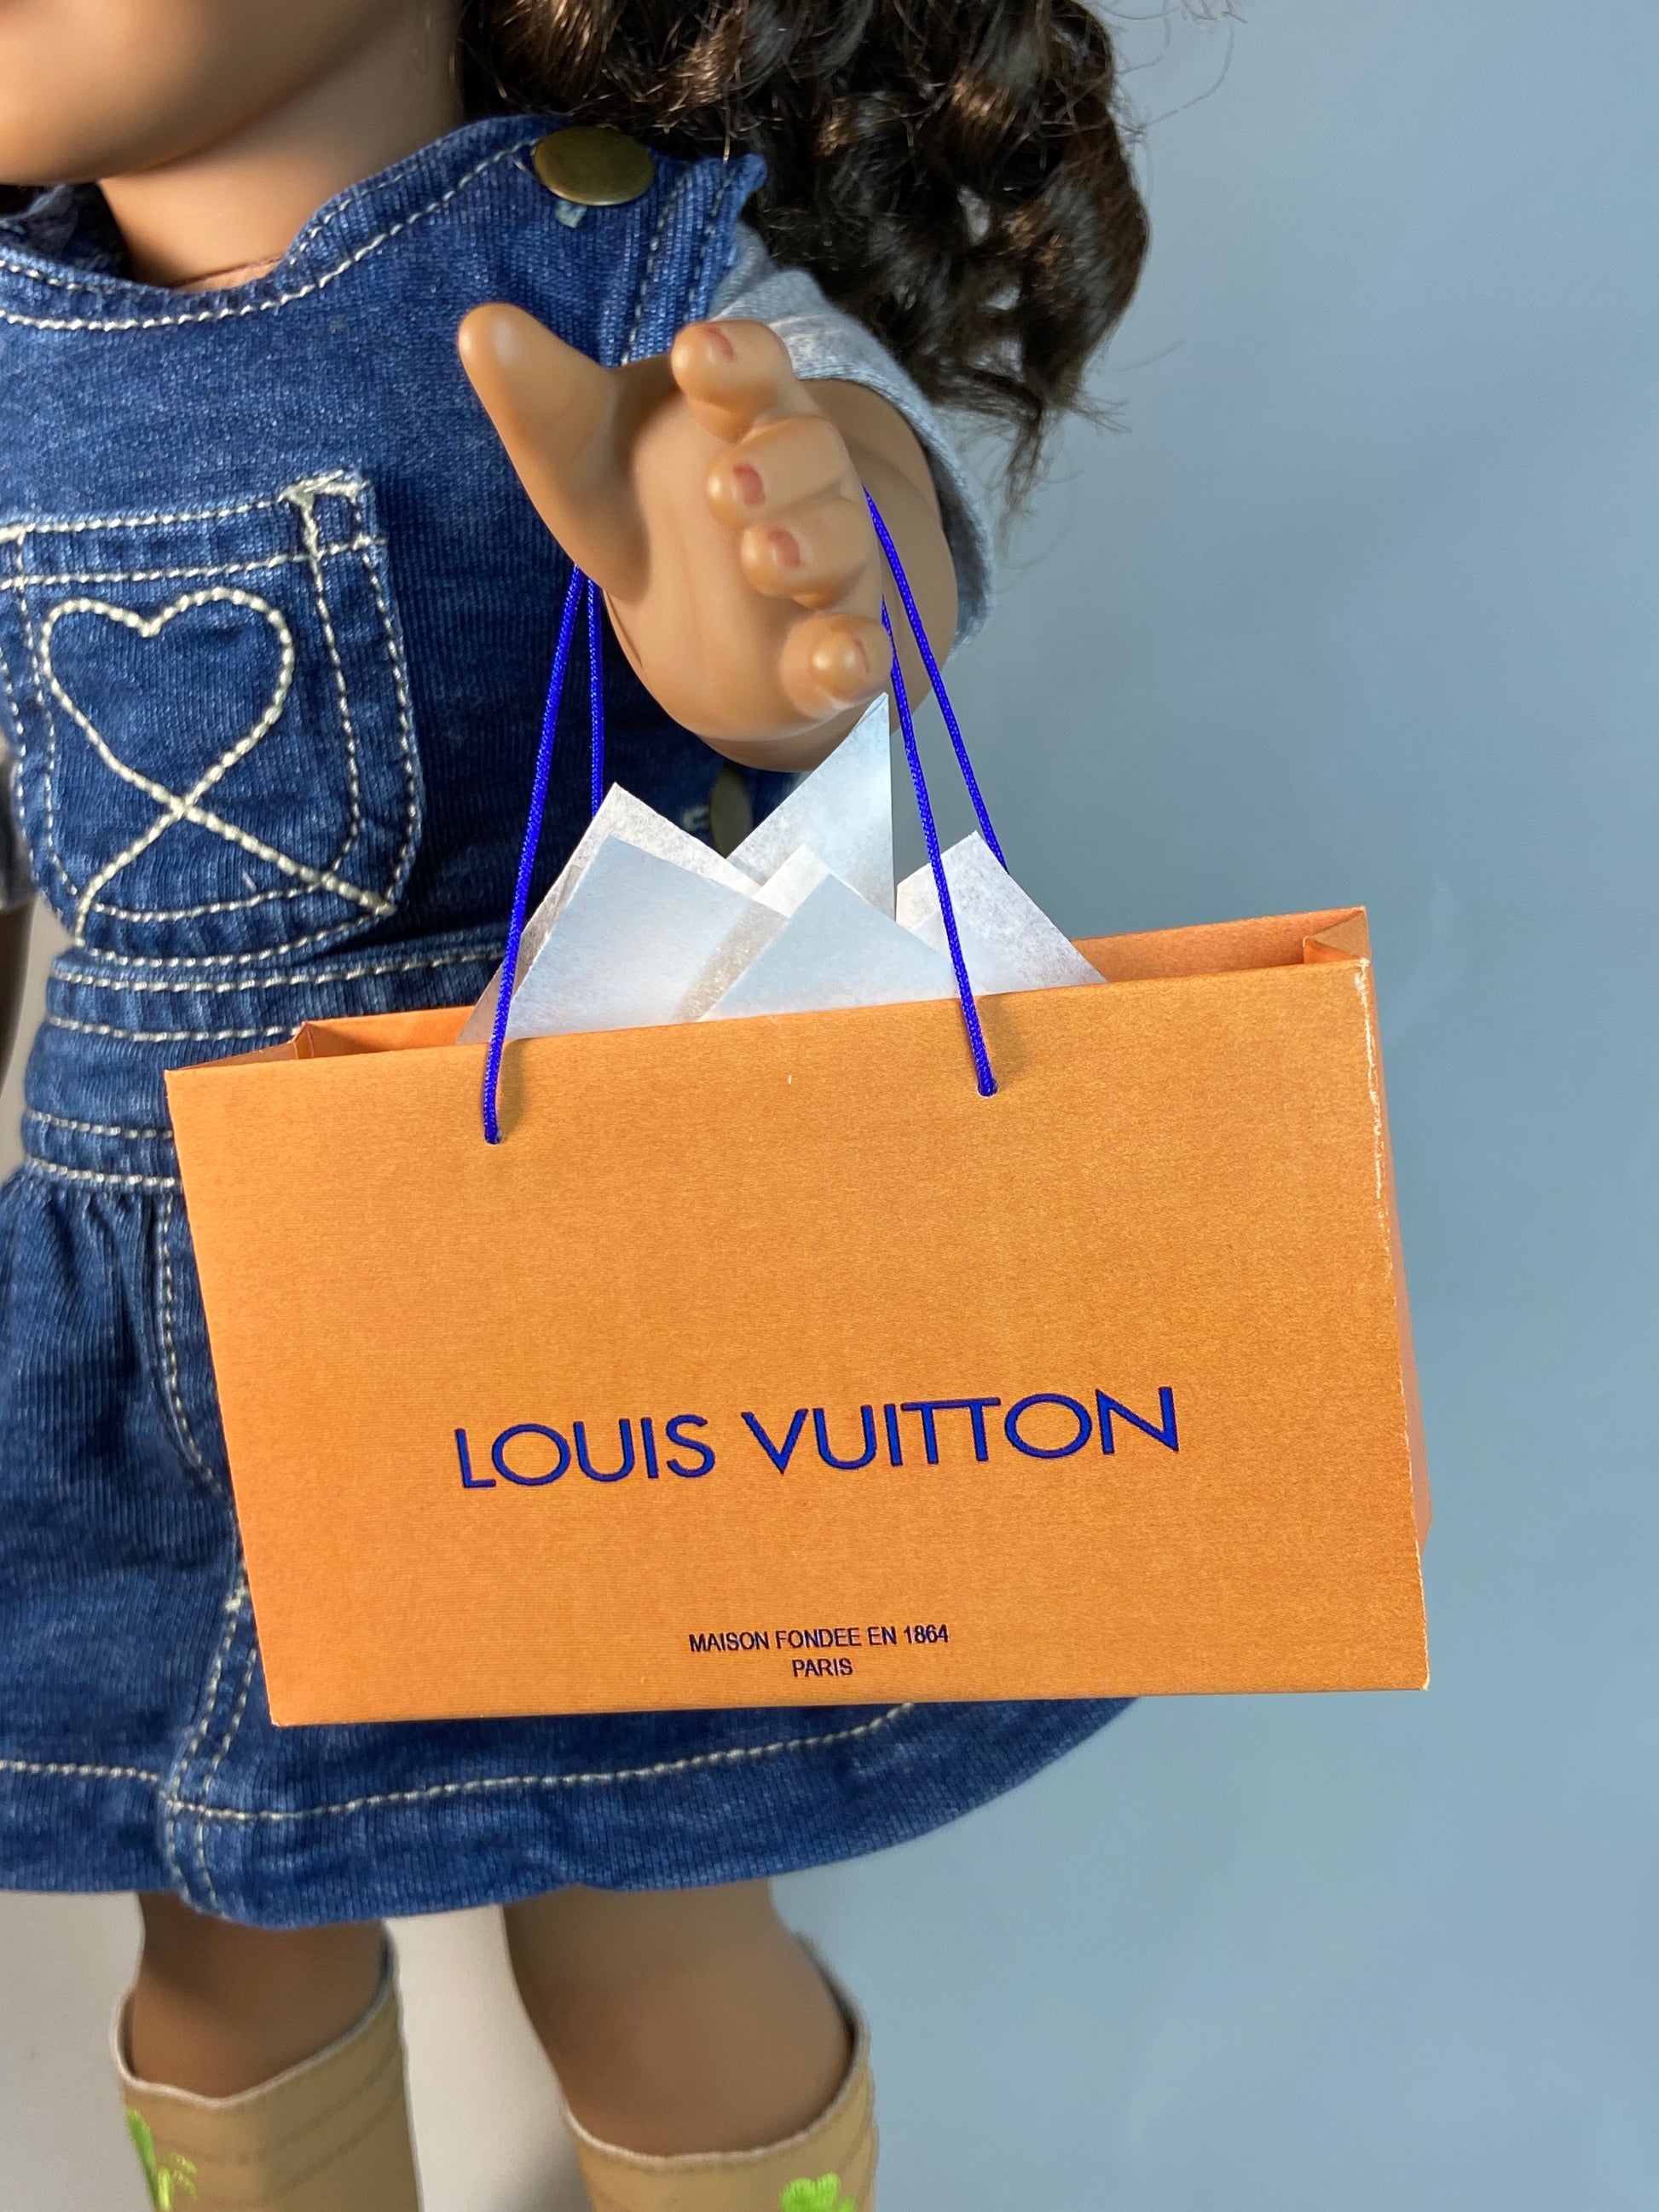 Lv Toddler purse  Your little shop Boutique